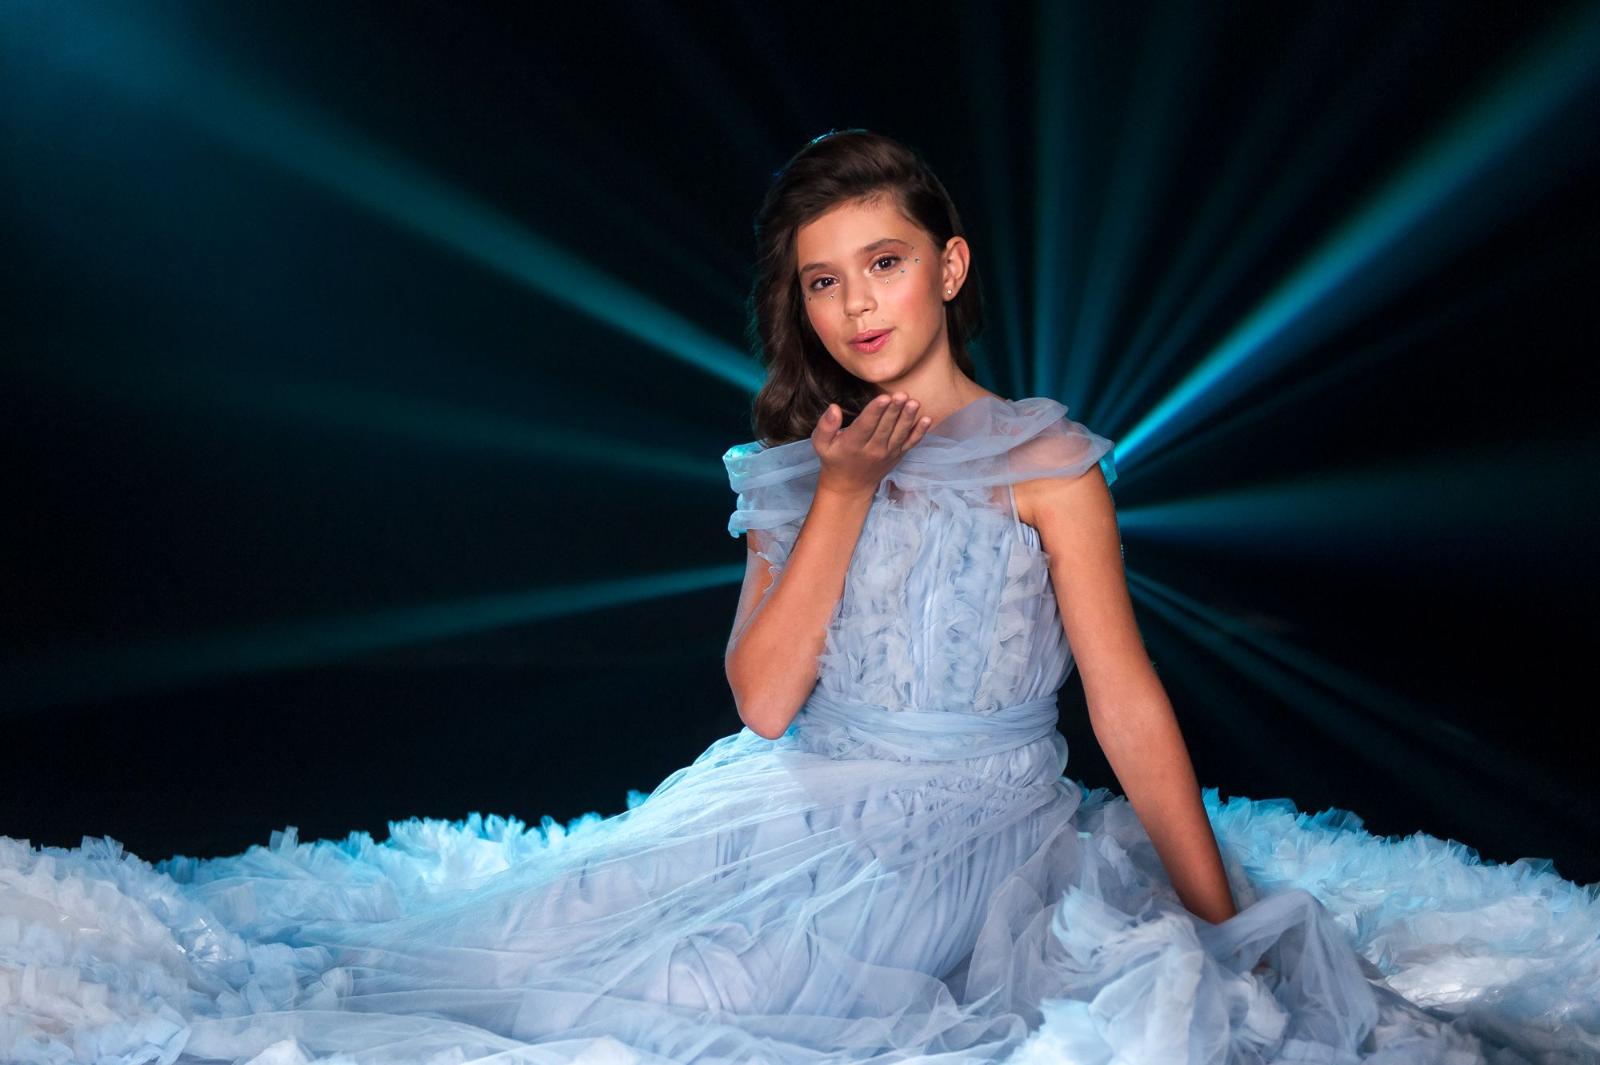 Красивые платья, струнный оркестр и качели над облаками: съемки клипа Софии Феськовой для «Детского Евровидения-2020»